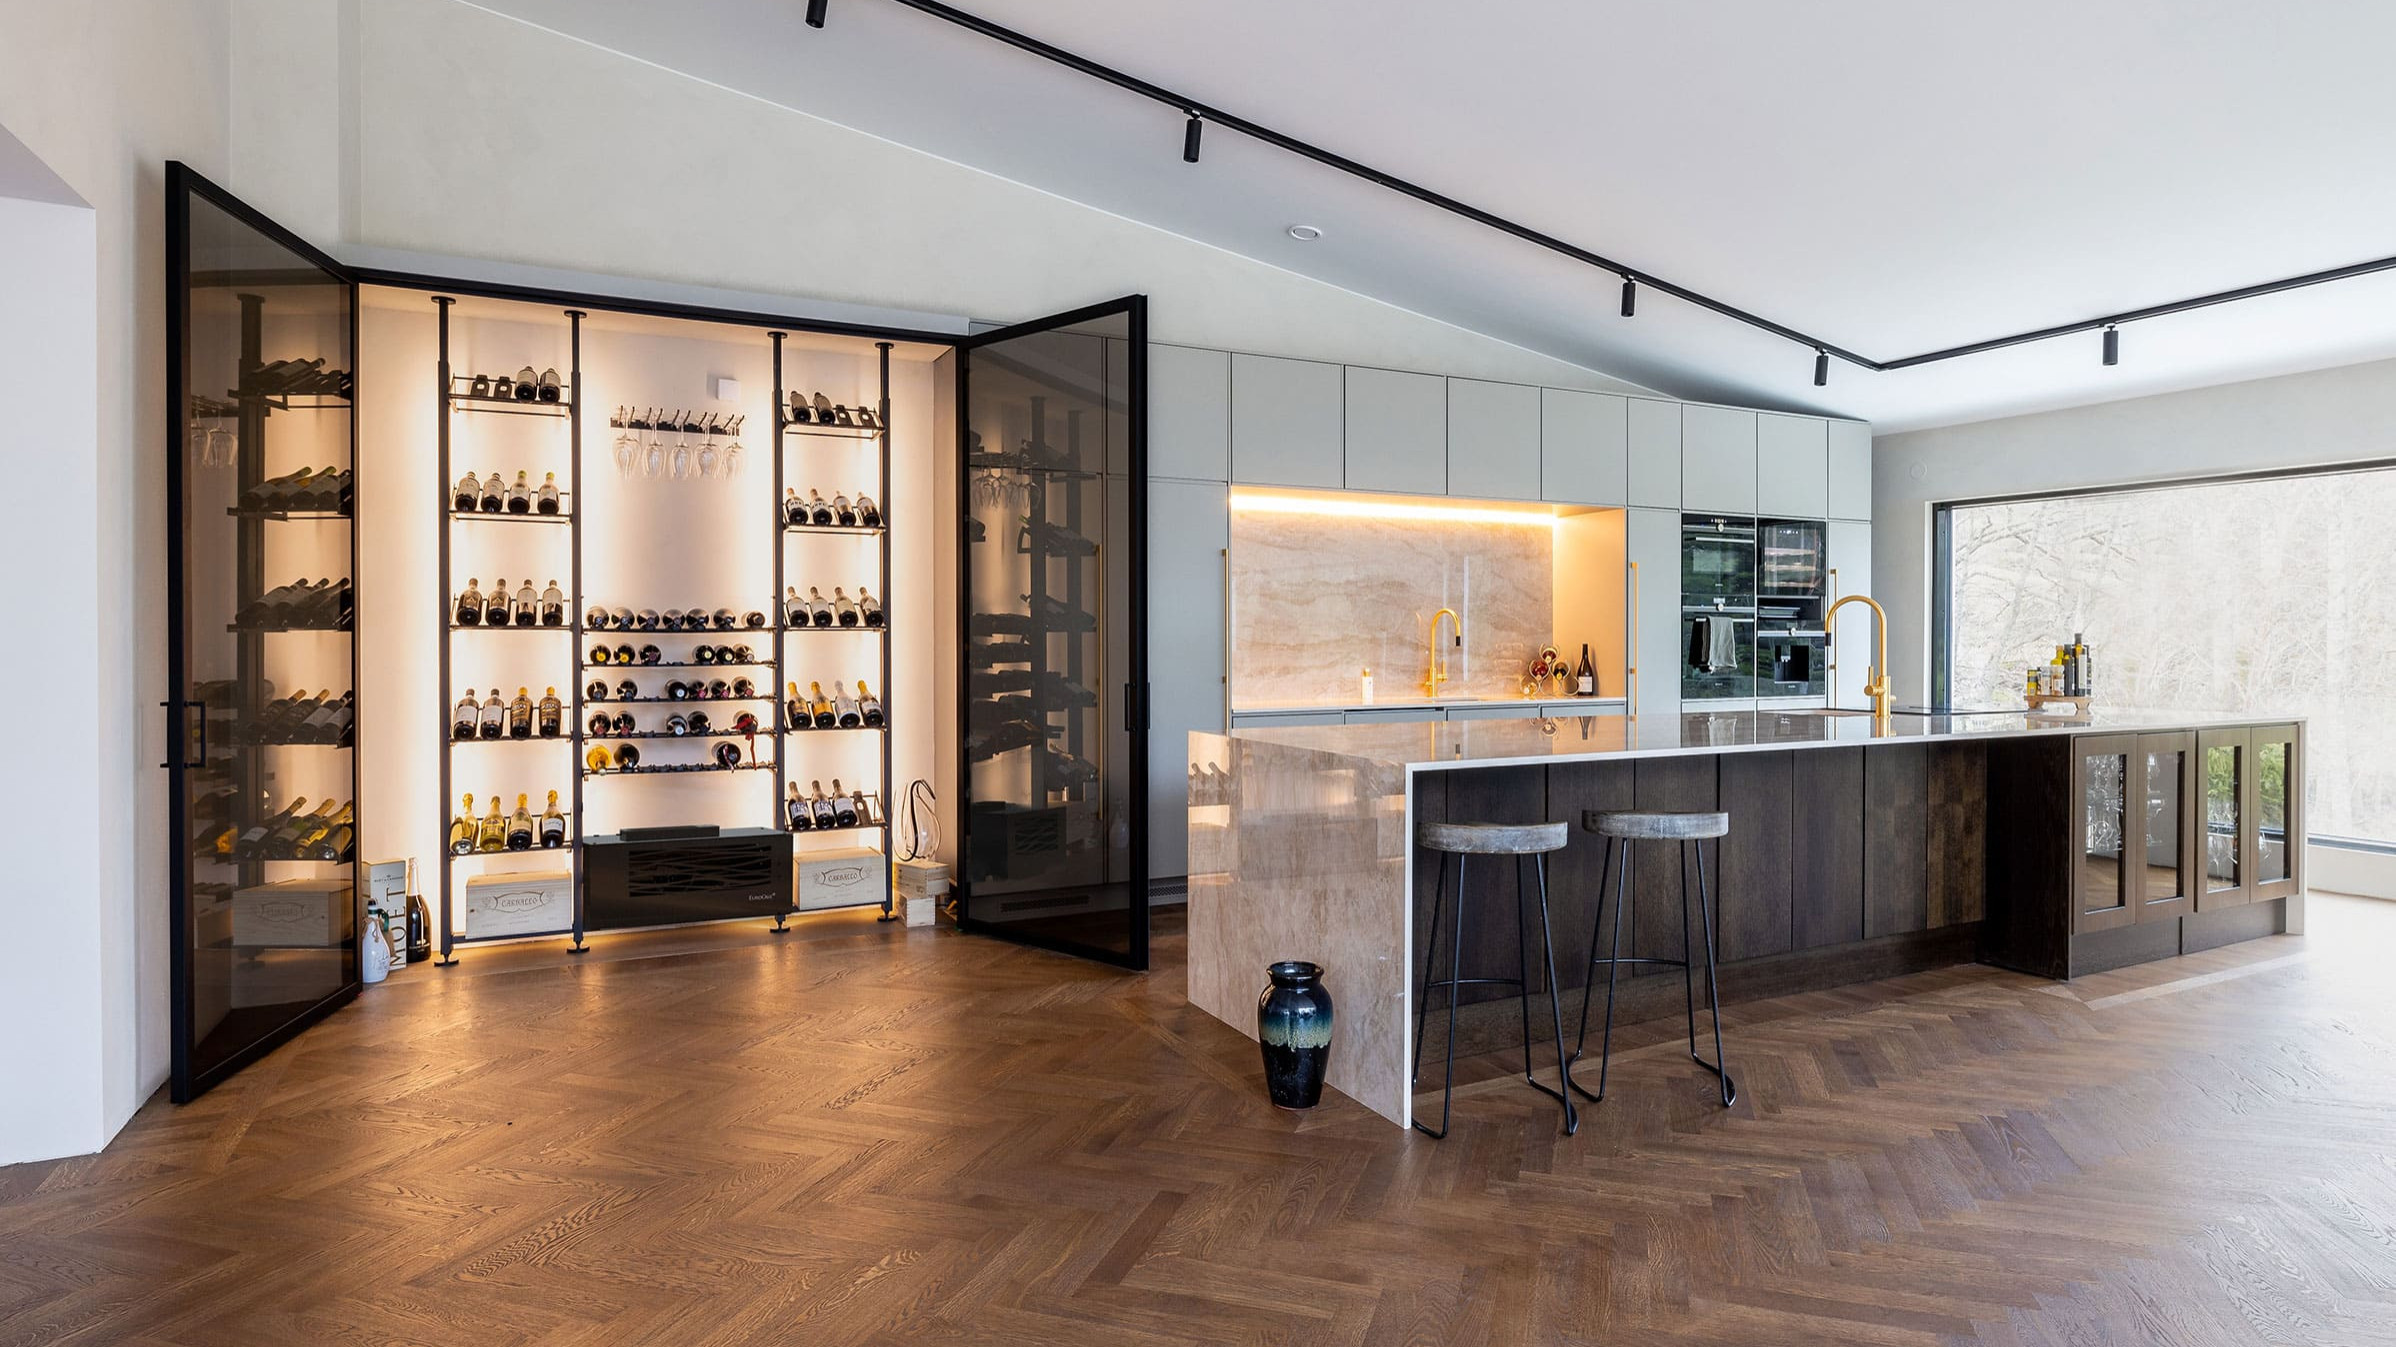 Maßgeschneiderter, klimatisierter Weinbereich. Beispiel für die Herstellung einer Glaswandvitrine in einer Luxusküche. Elegante Innenarchitektur.